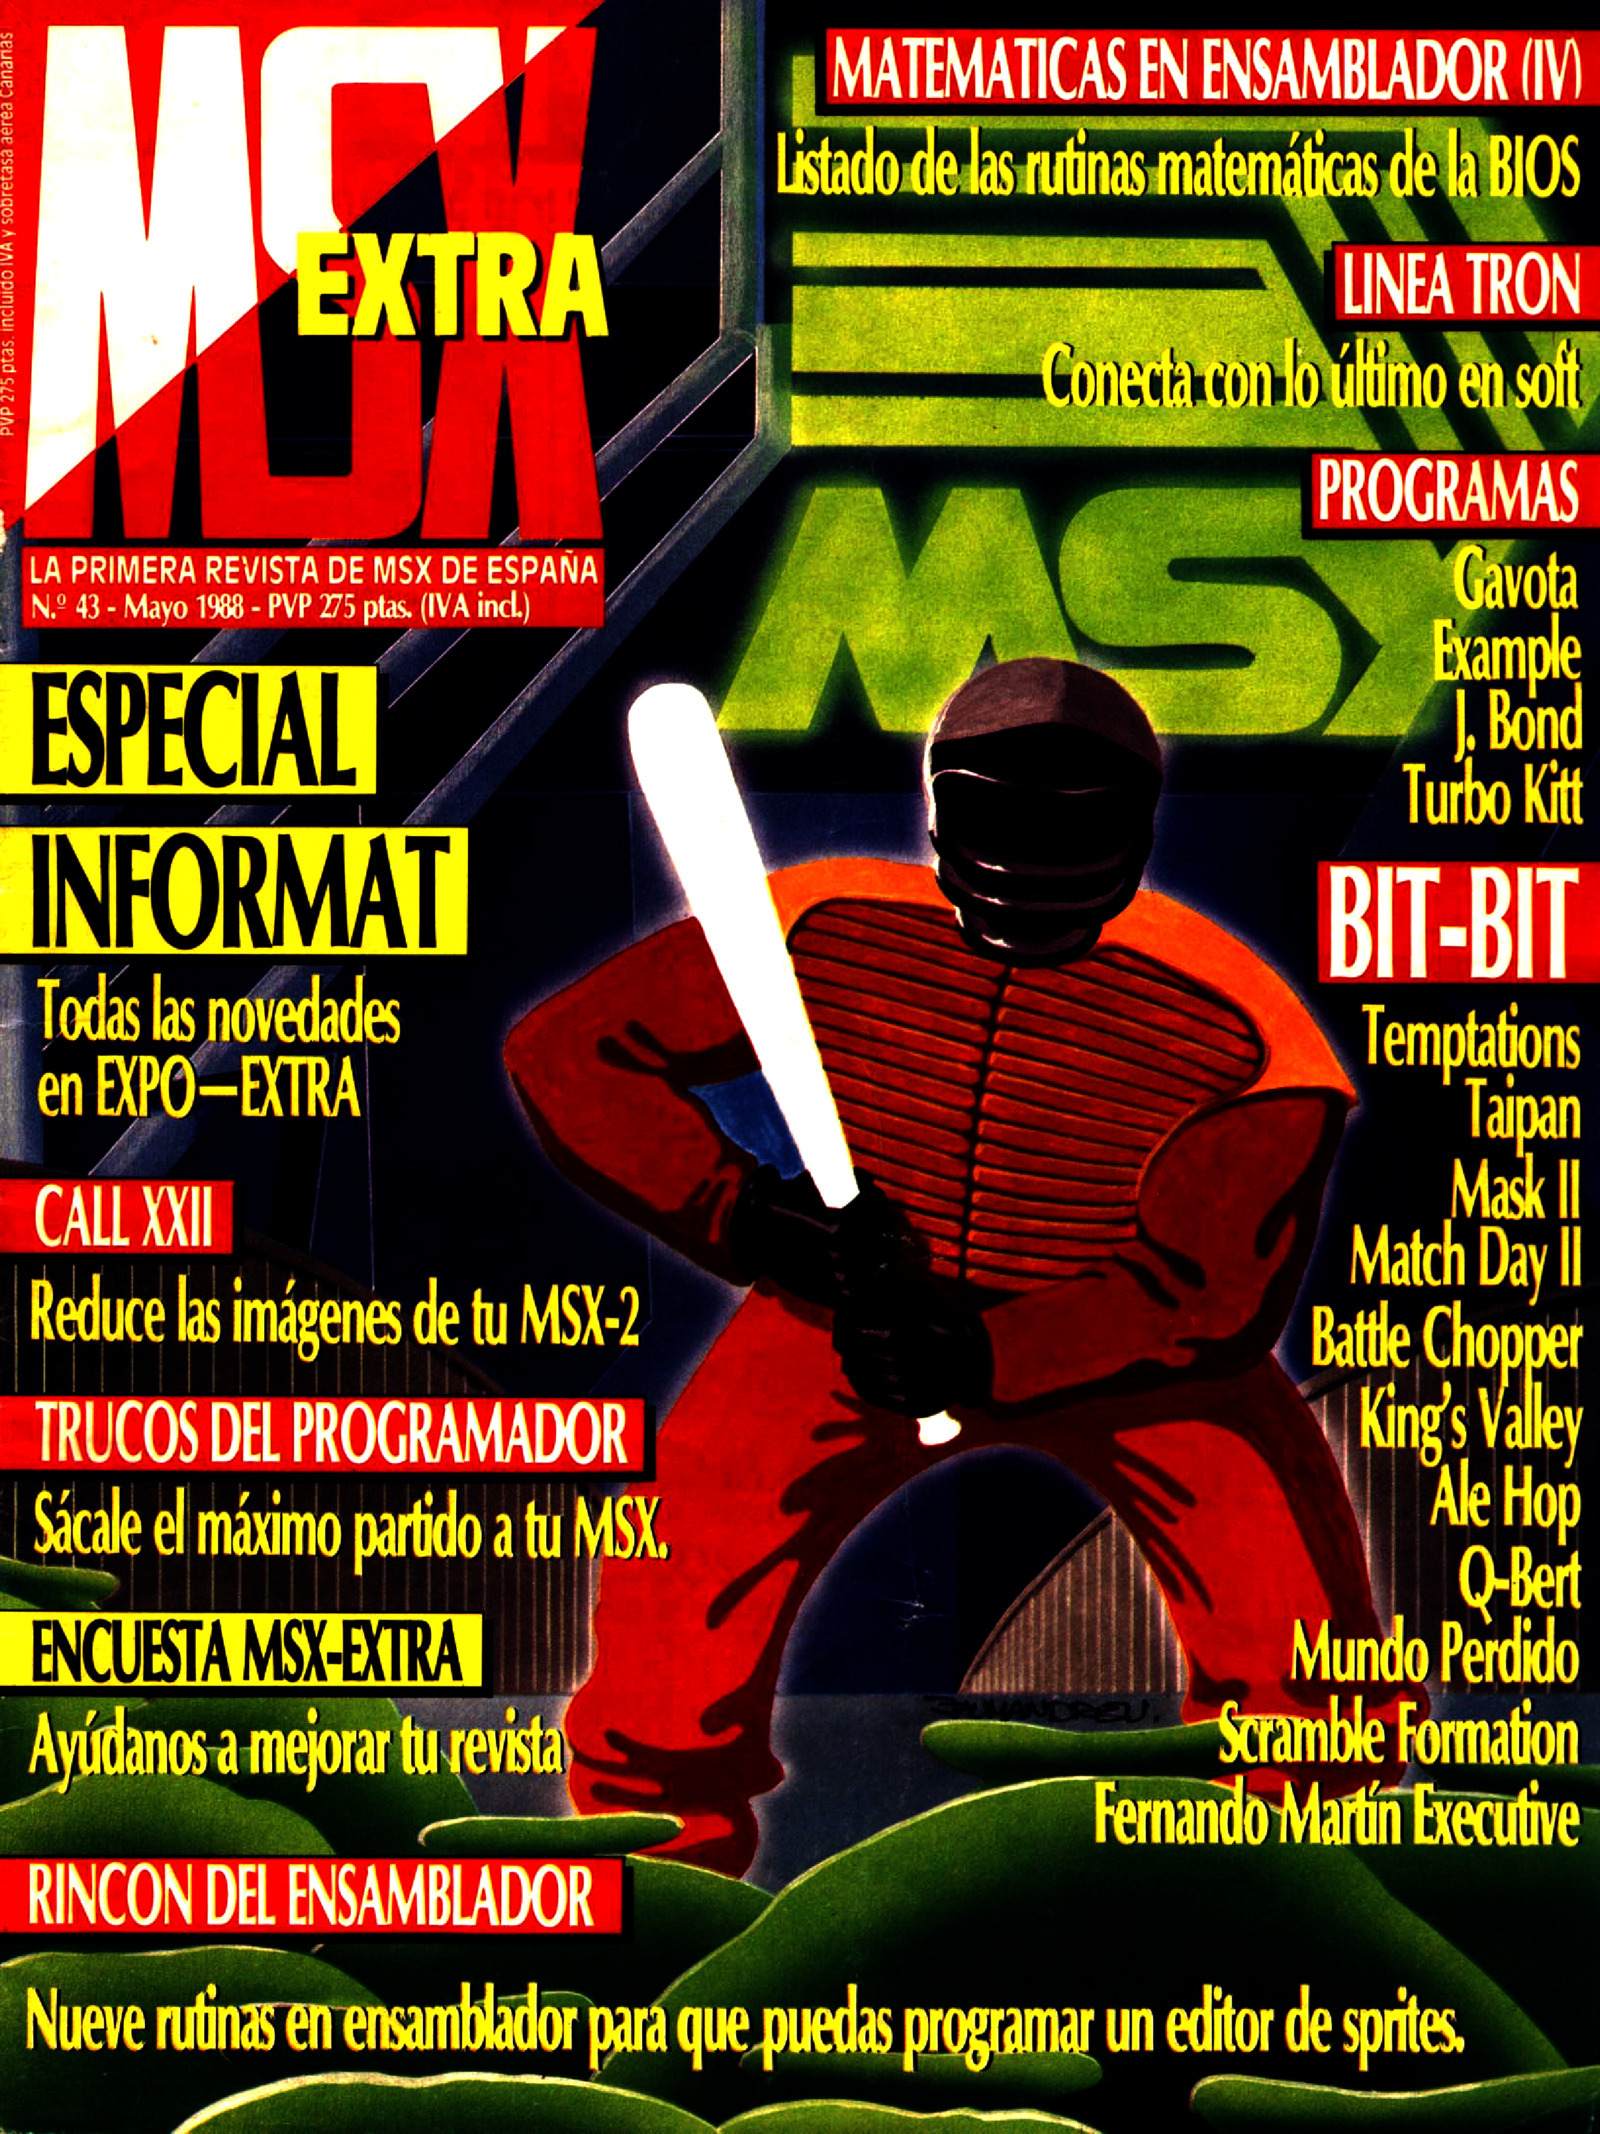 msx-extra 1